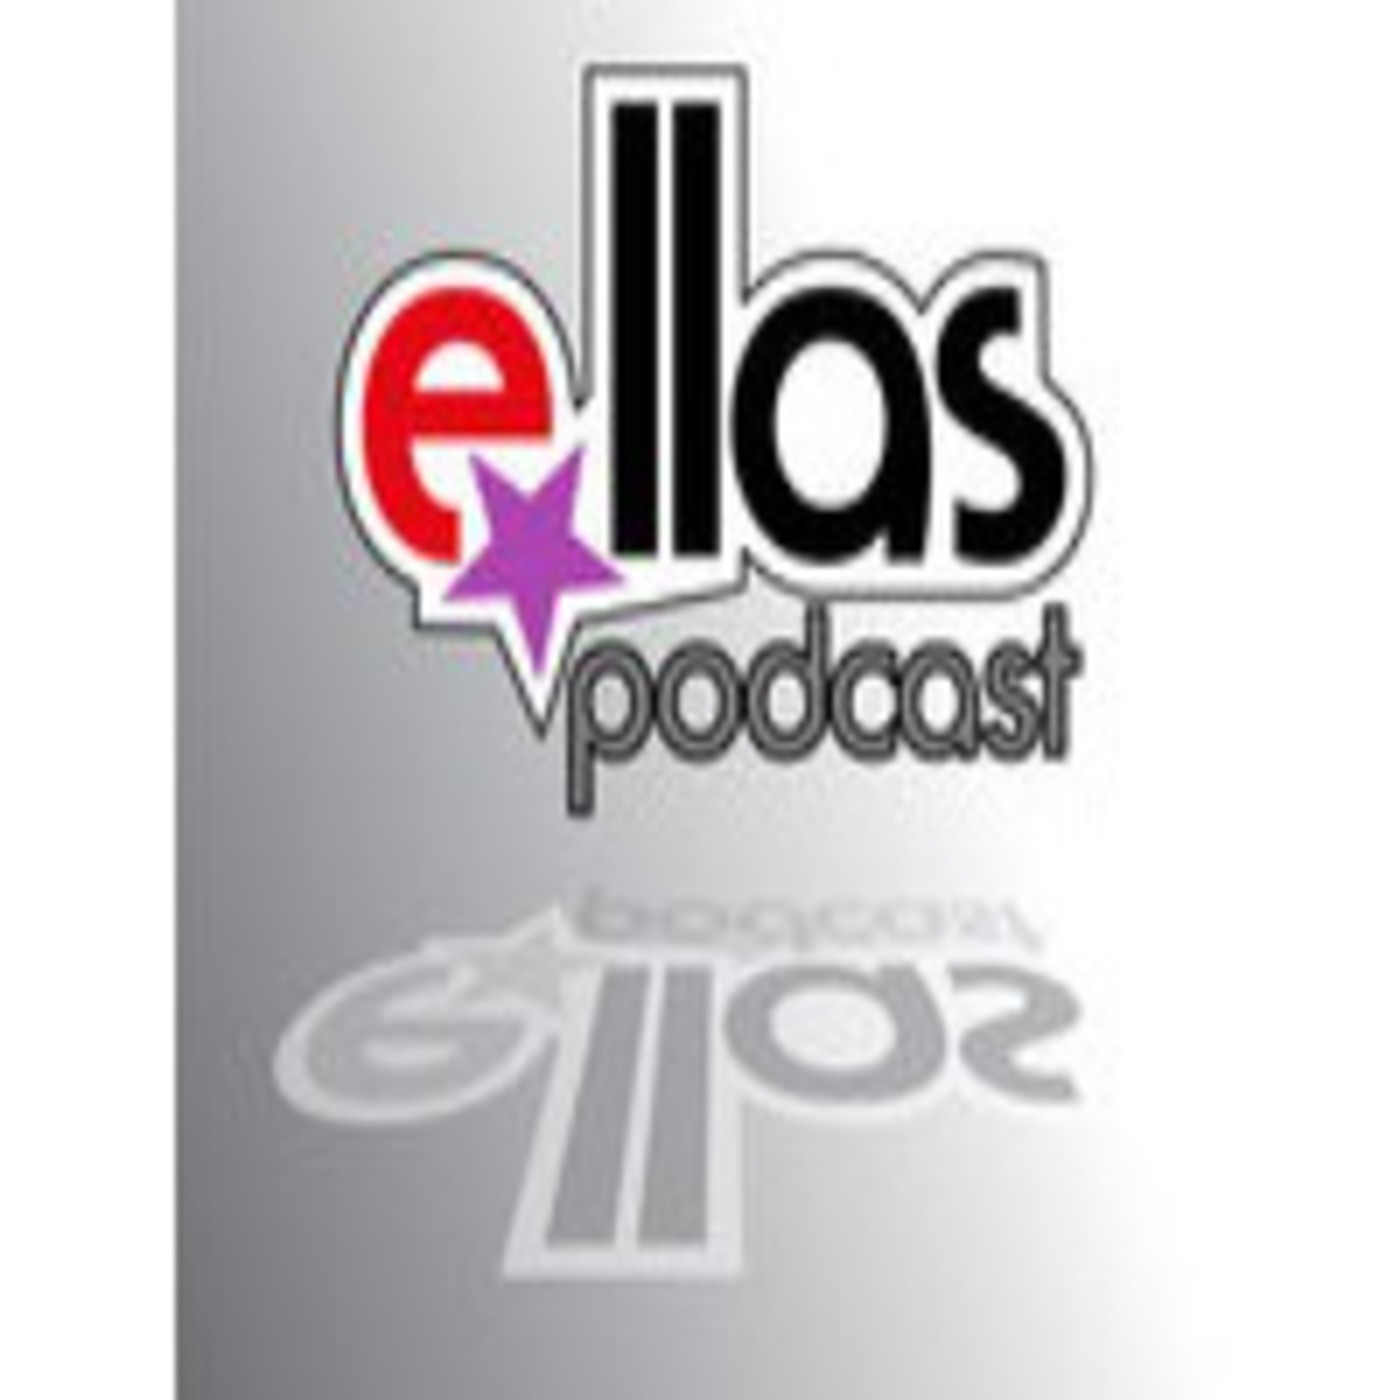 Podcast E-llas